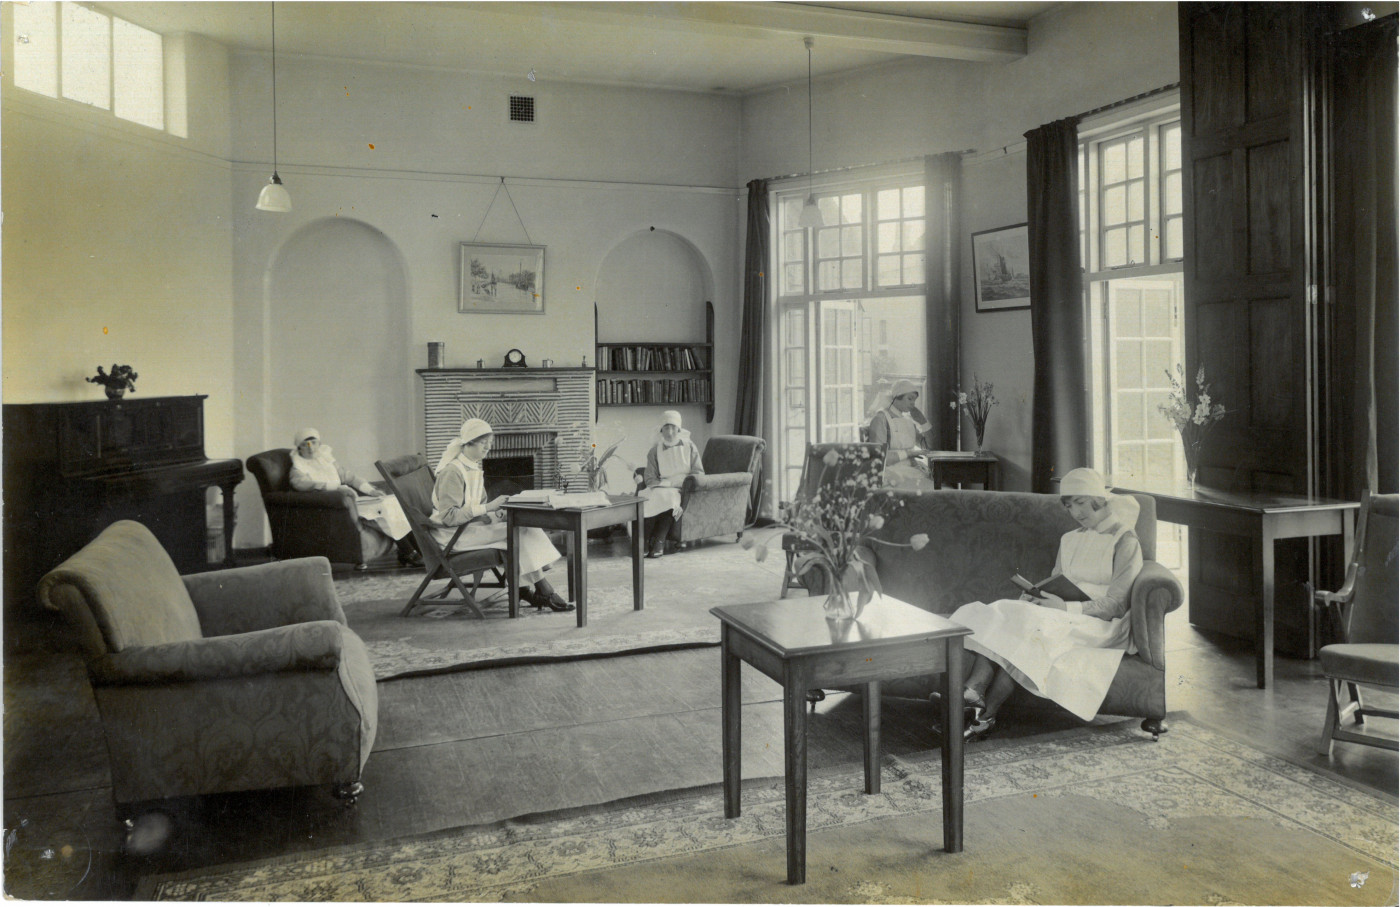 Picture 10 - Tilbury Hospital nurses' sitting room 1925  (2)